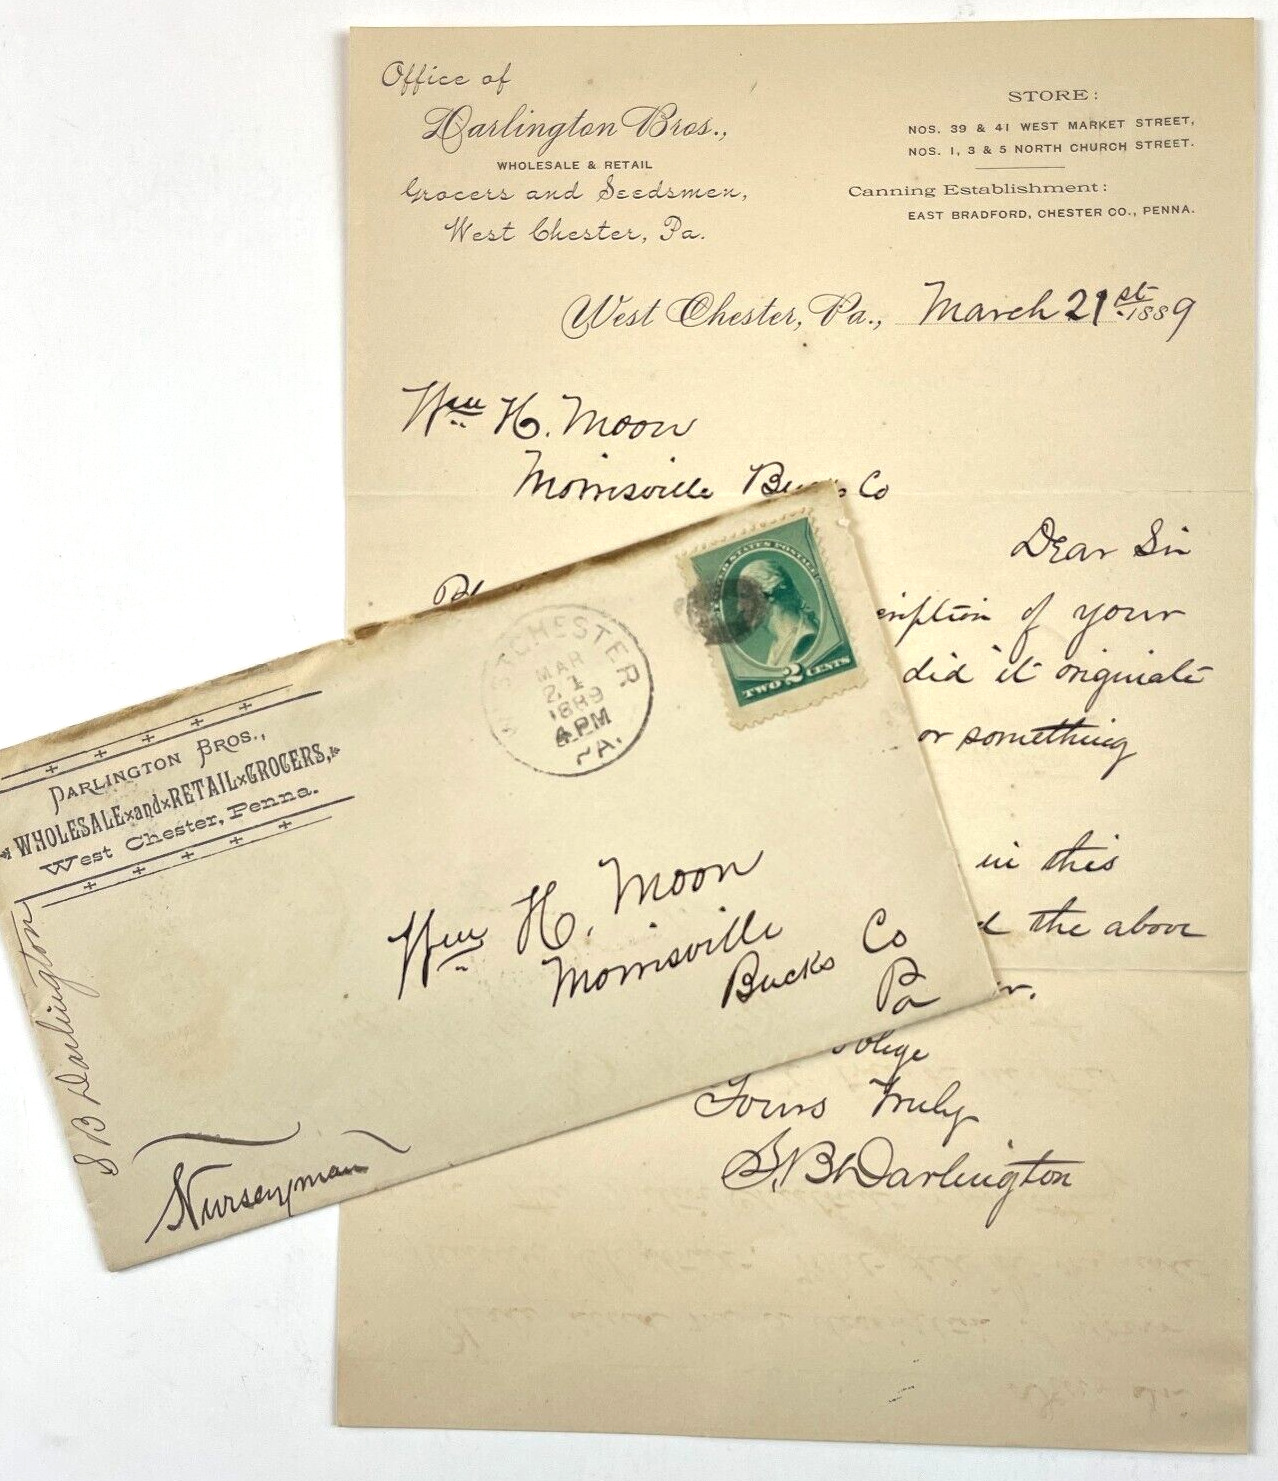 1889 Darlington Bros Grocers Seedsman Letter Stamped Envelope West Chester, PA